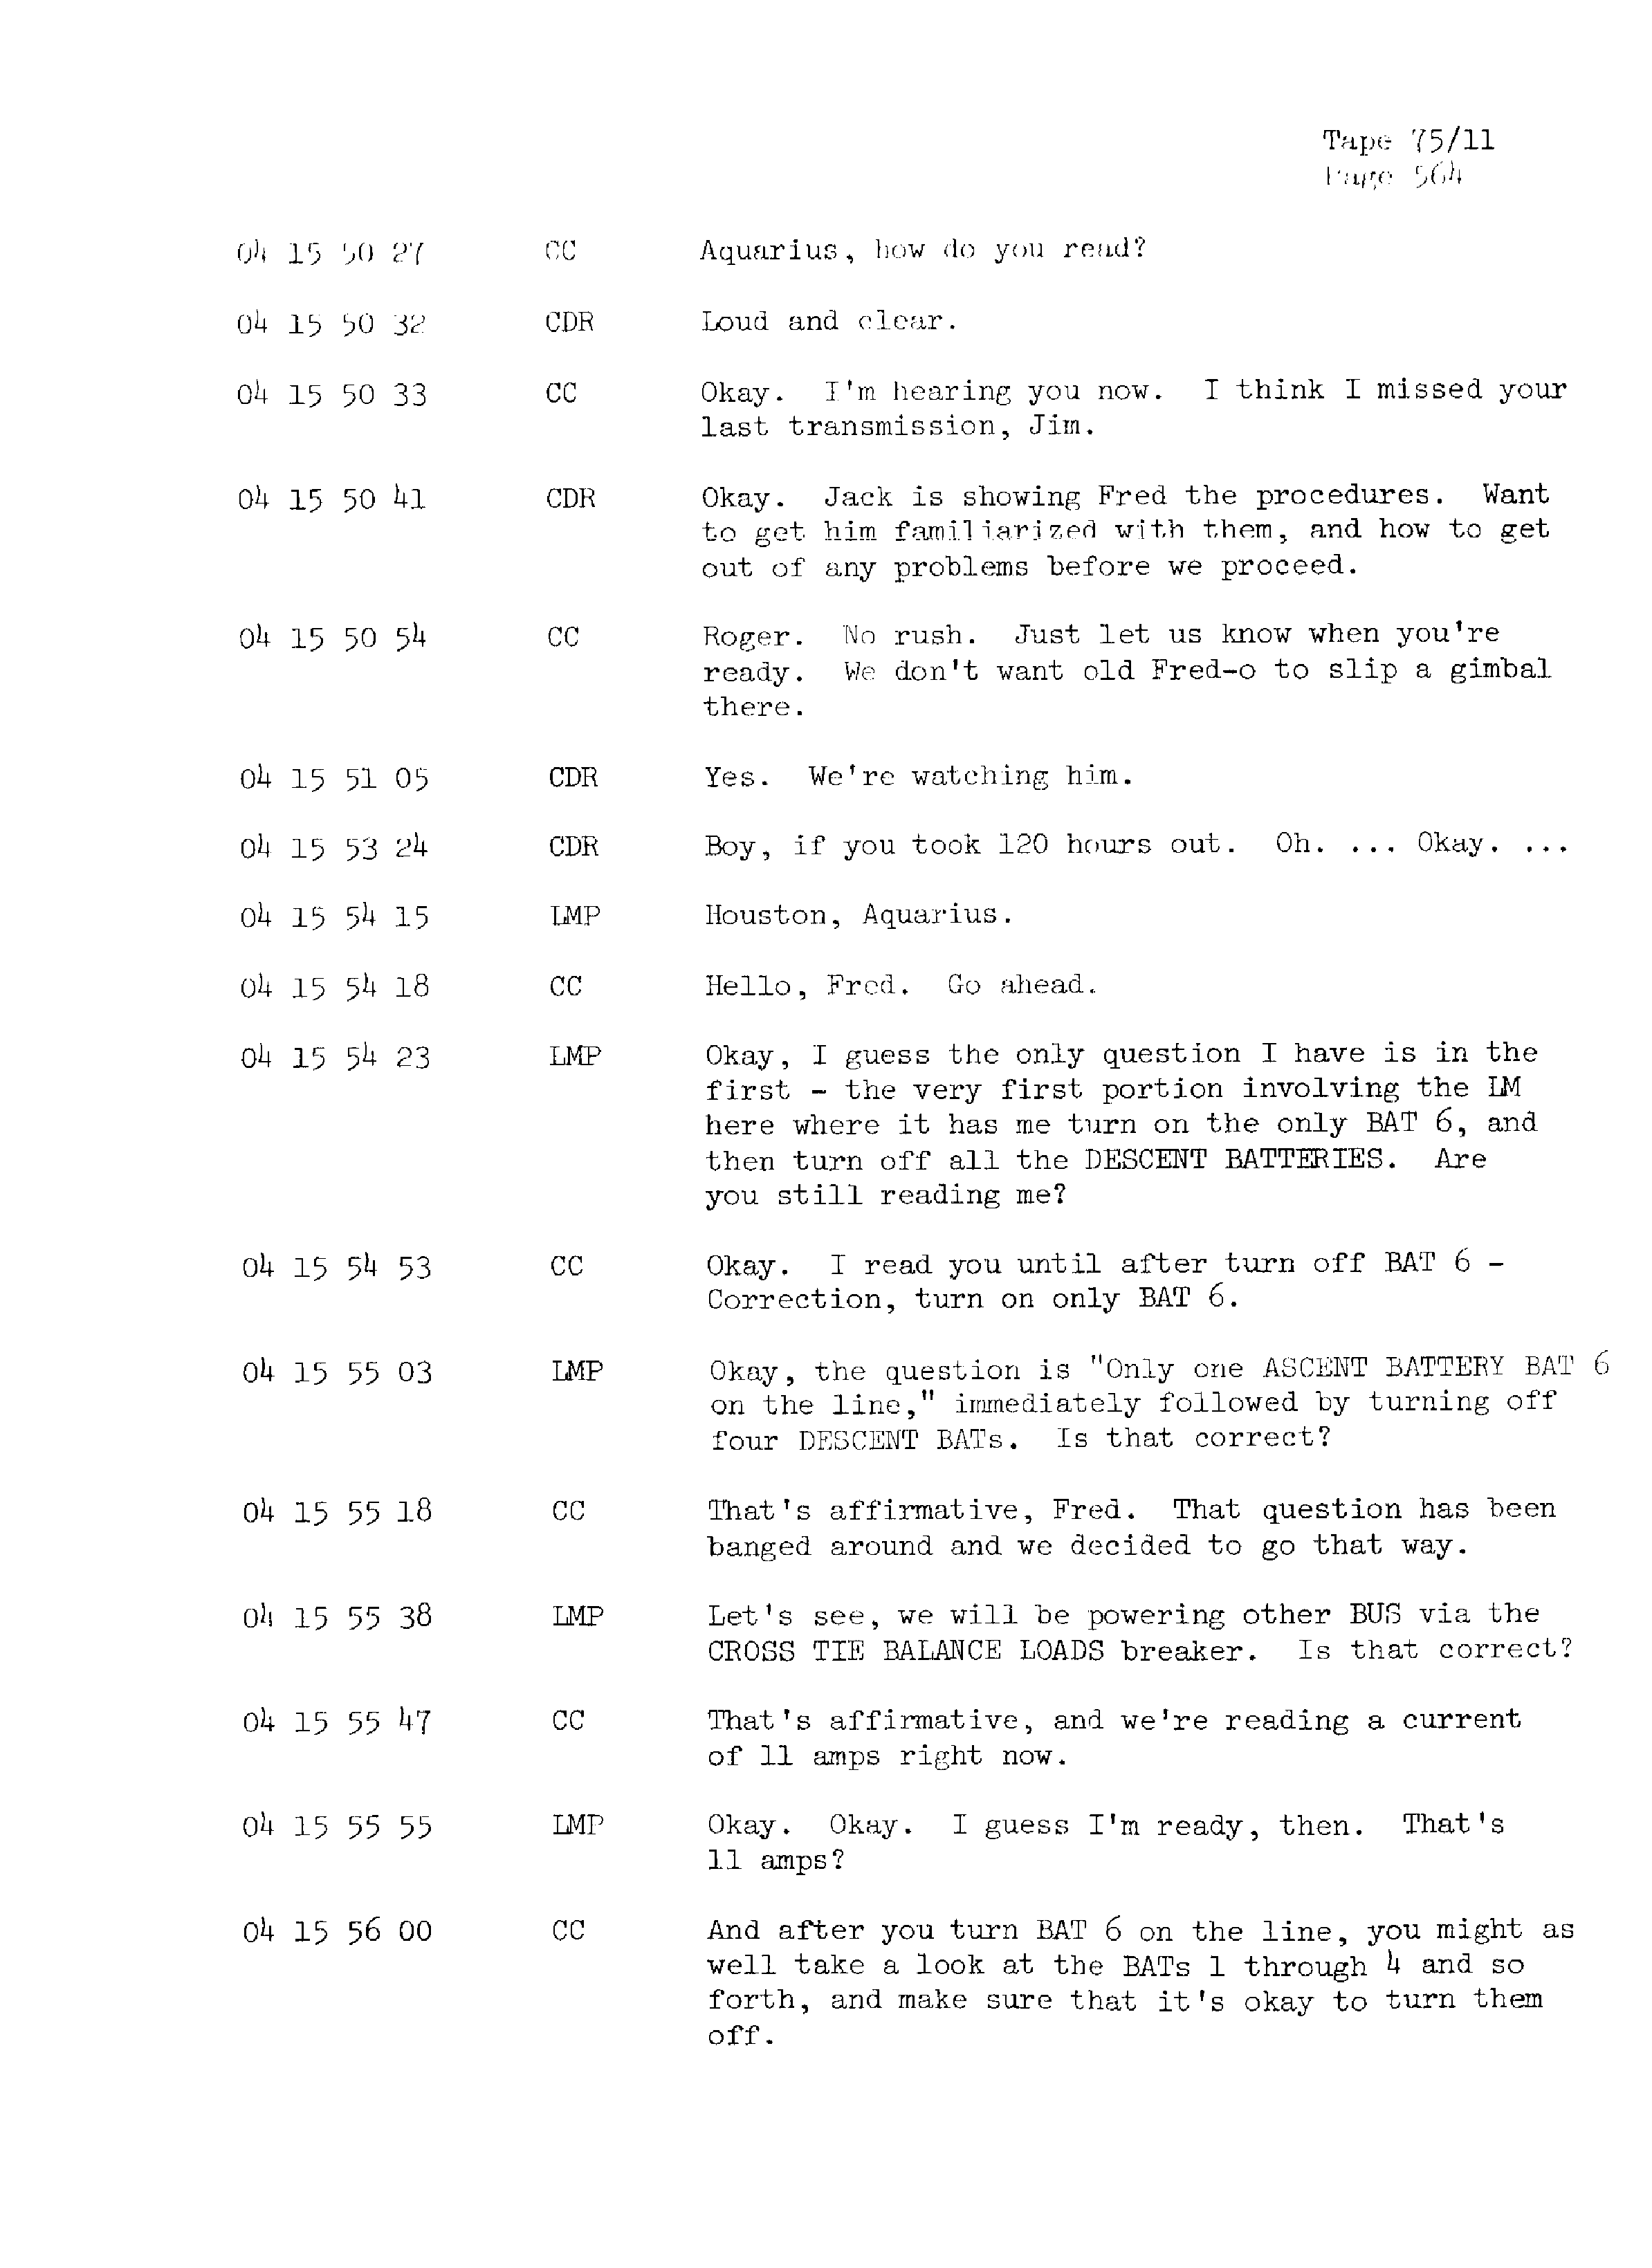 Page 571 of Apollo 13’s original transcript